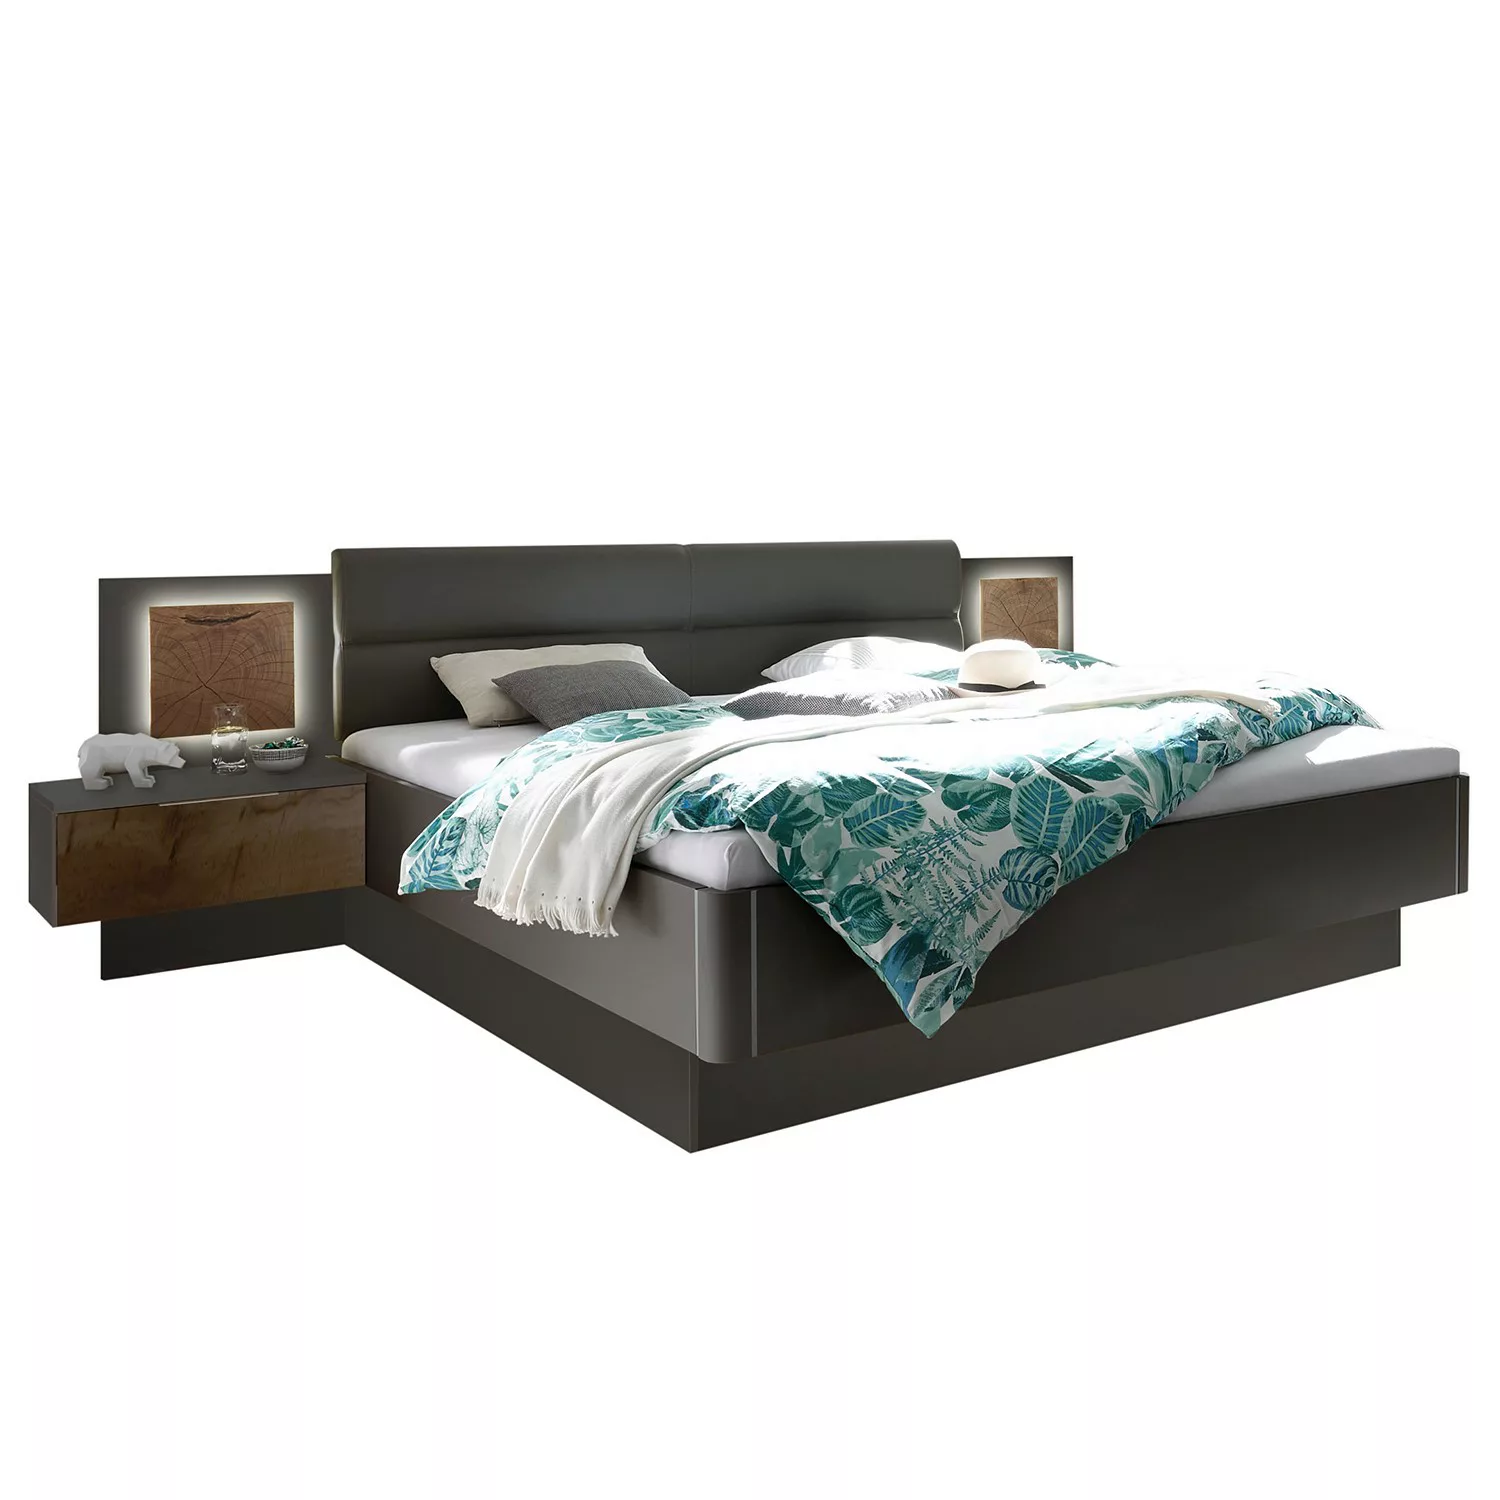 Bettanlage - grau - 305 cm - 96 cm - 205 cm - Betten > Bettgestelle - Möbel günstig online kaufen